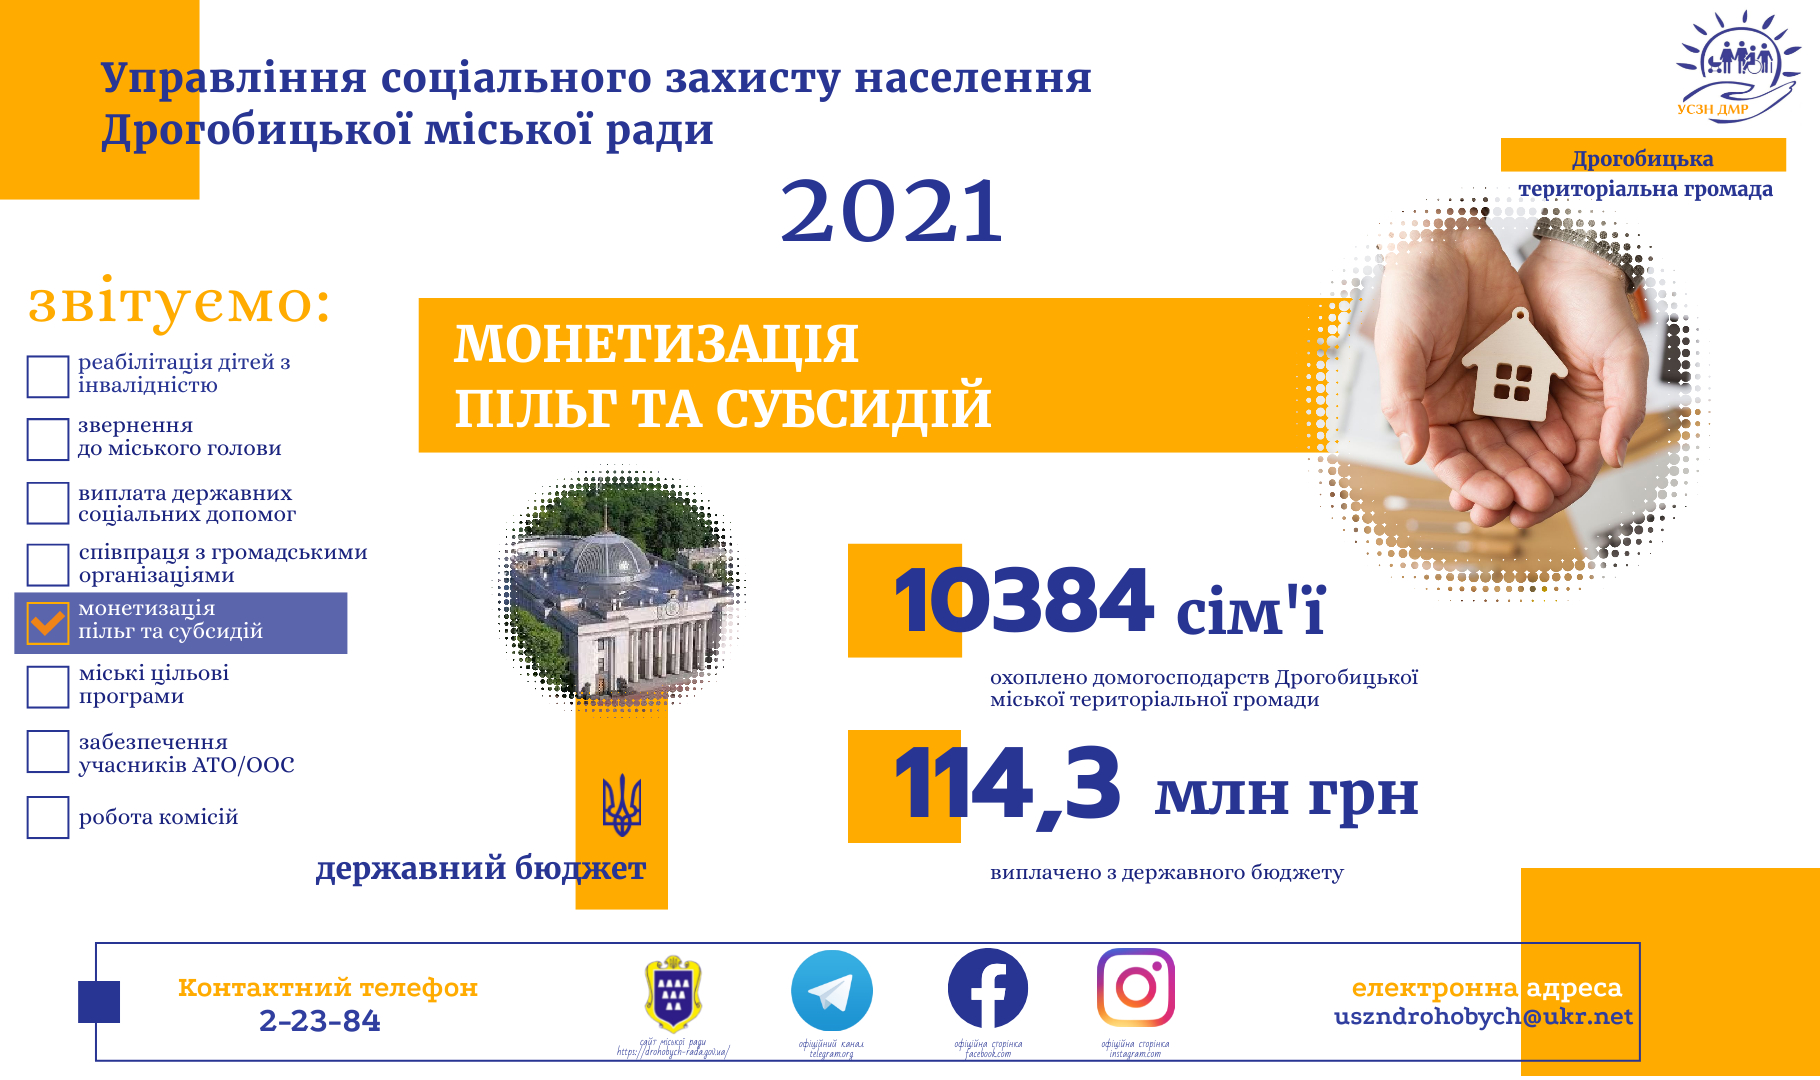 Більше 114,3 млн грн складає виплата пільг та субсидій у грошовій формі у 2021 році